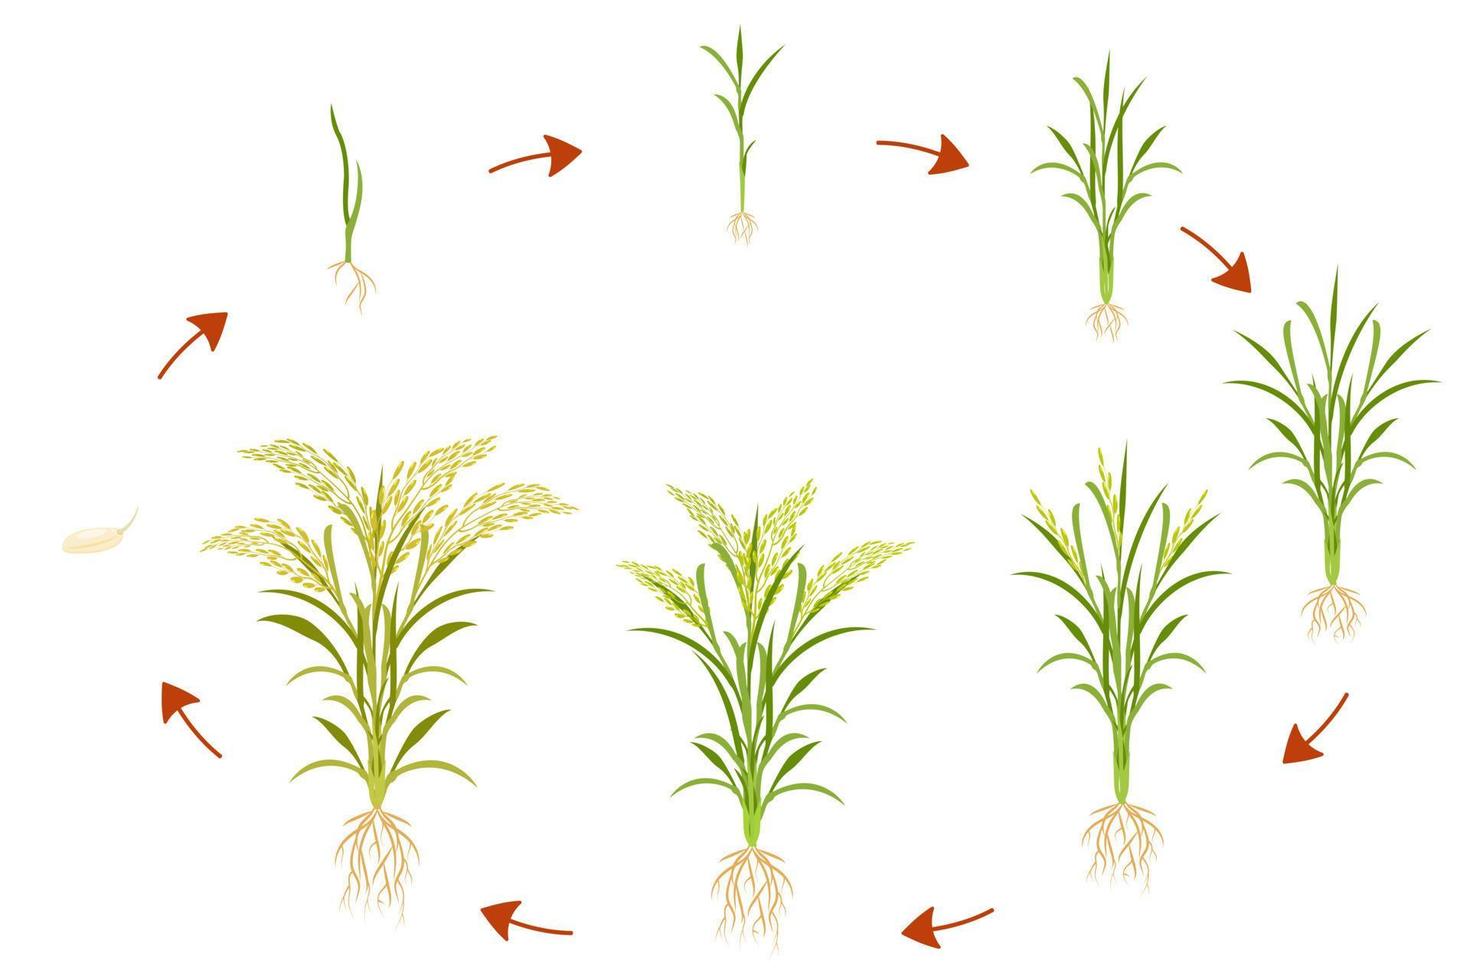 Der Wachstumszyklus von Reis ist kreisförmig. Infografiken von wachsenden Getreidepflanzen. vektor